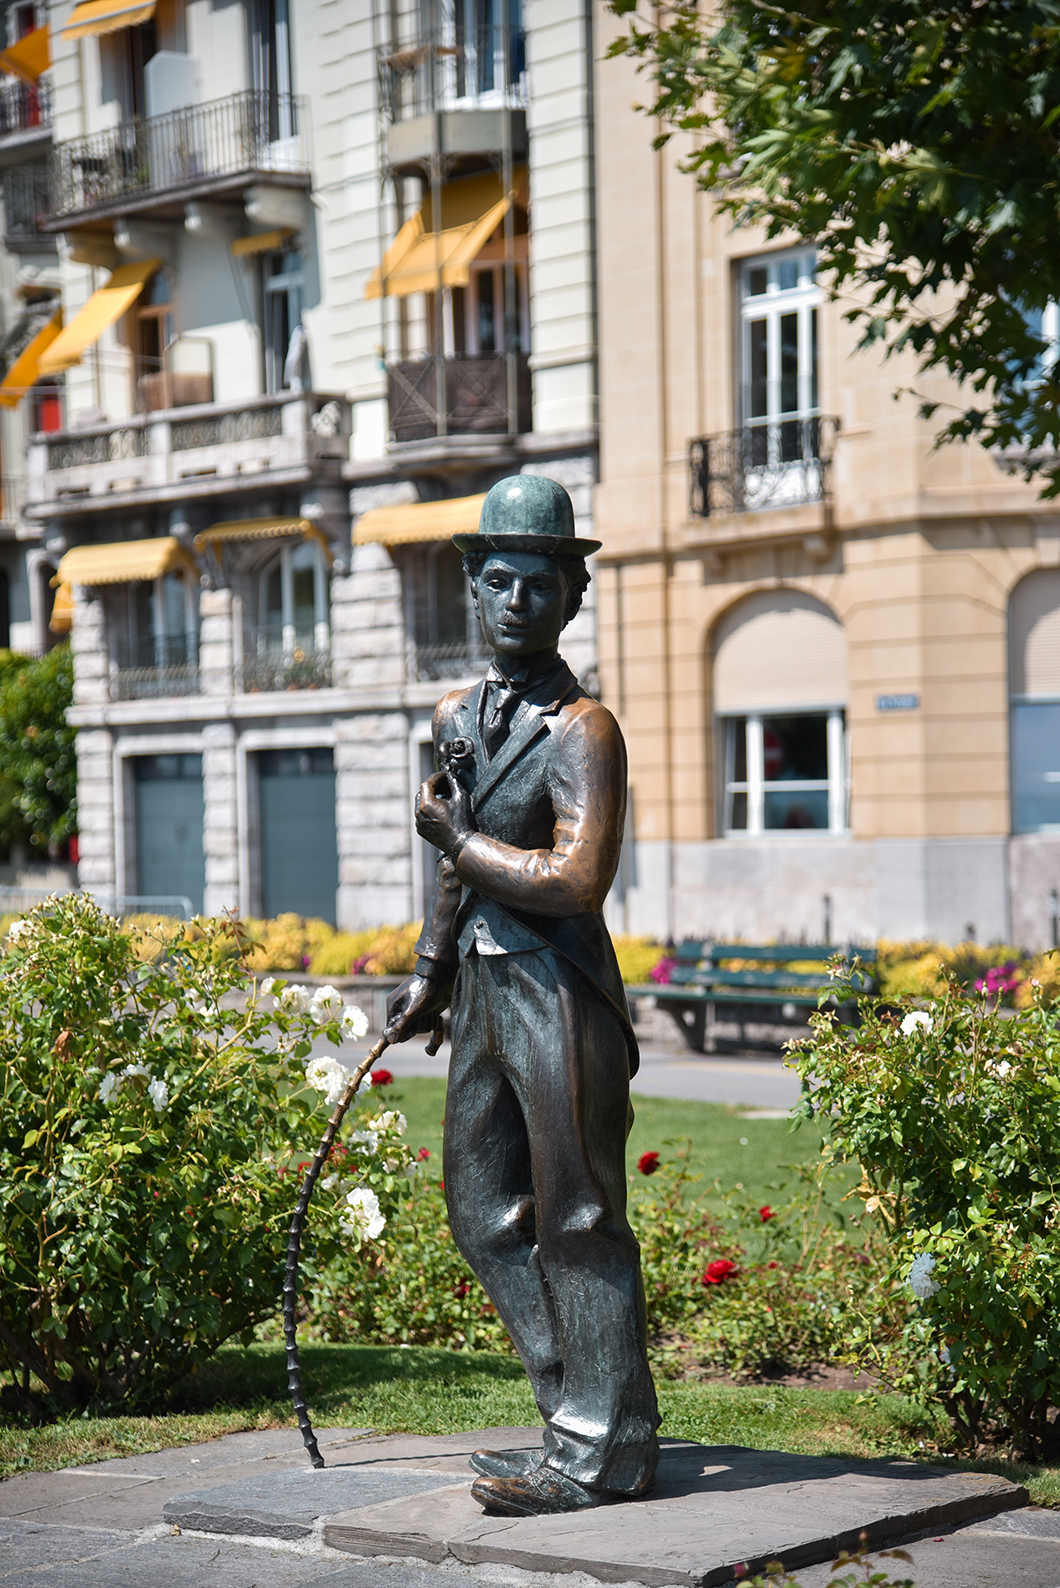 La statue de Charlie Chaplin, incontournables à Vevey